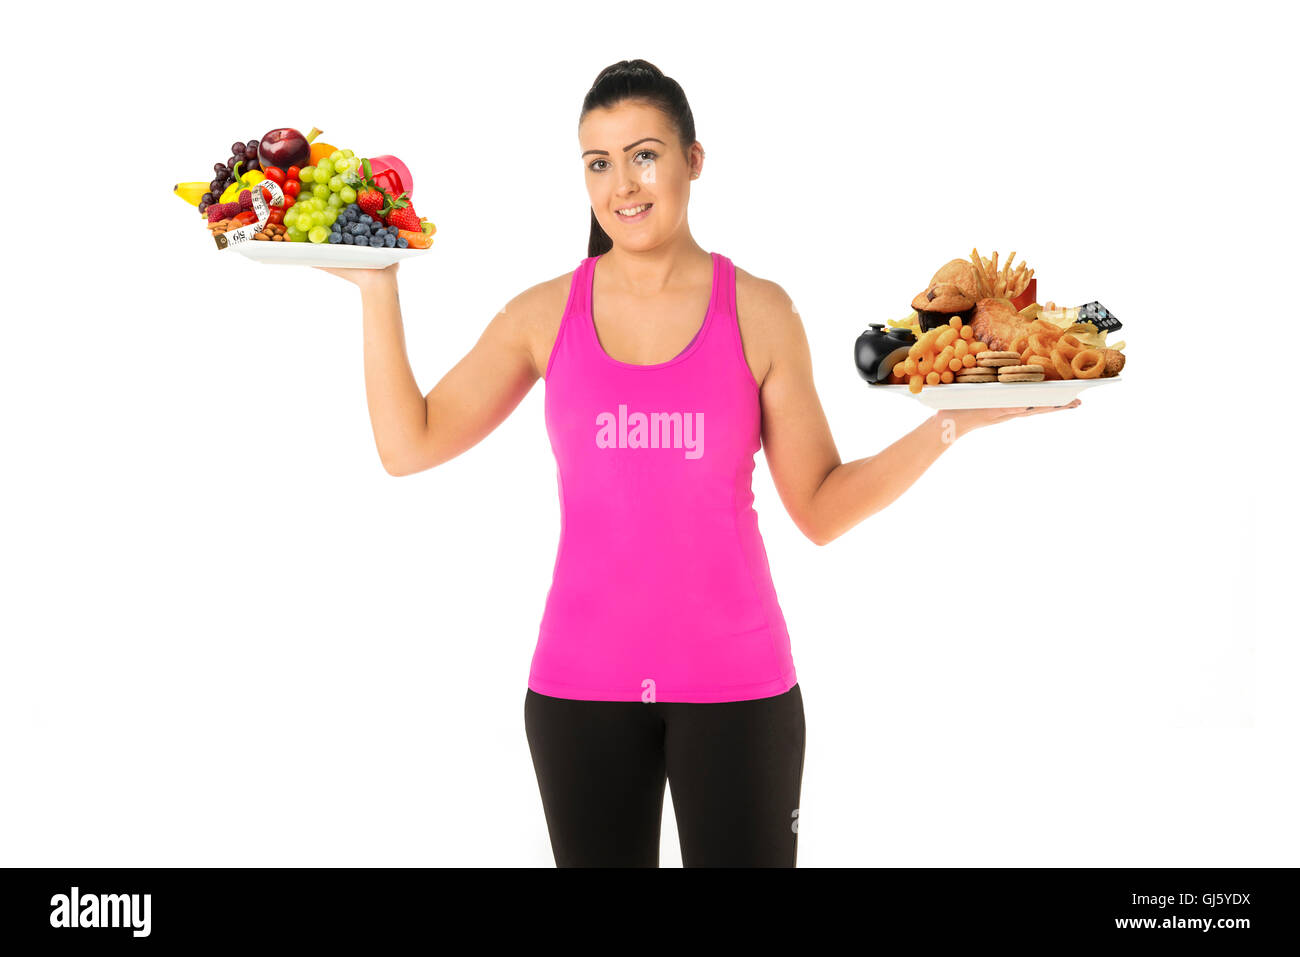 Gesunde oder ungesunde Lebensweise Konzept junge Frau mit zwei Platten von Lebensmitteln eine ungesunde anderen gesunden wählen Sie gesund Stockfoto